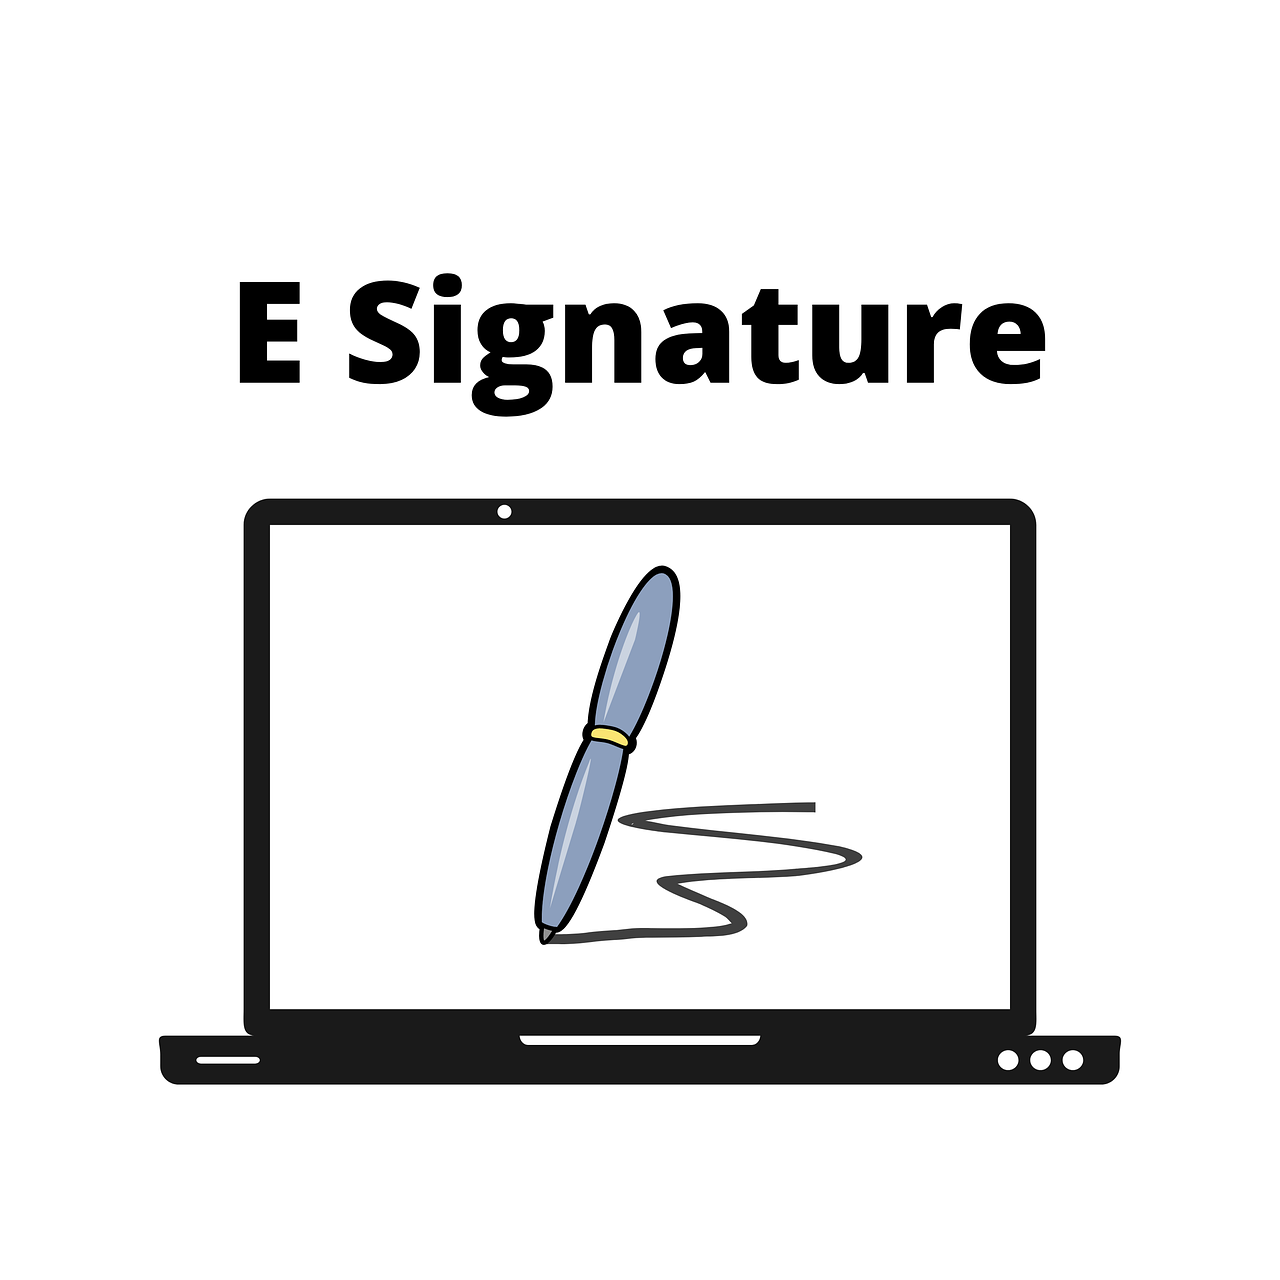 5 sposobów na uzyskanie podpisu elektronicznego